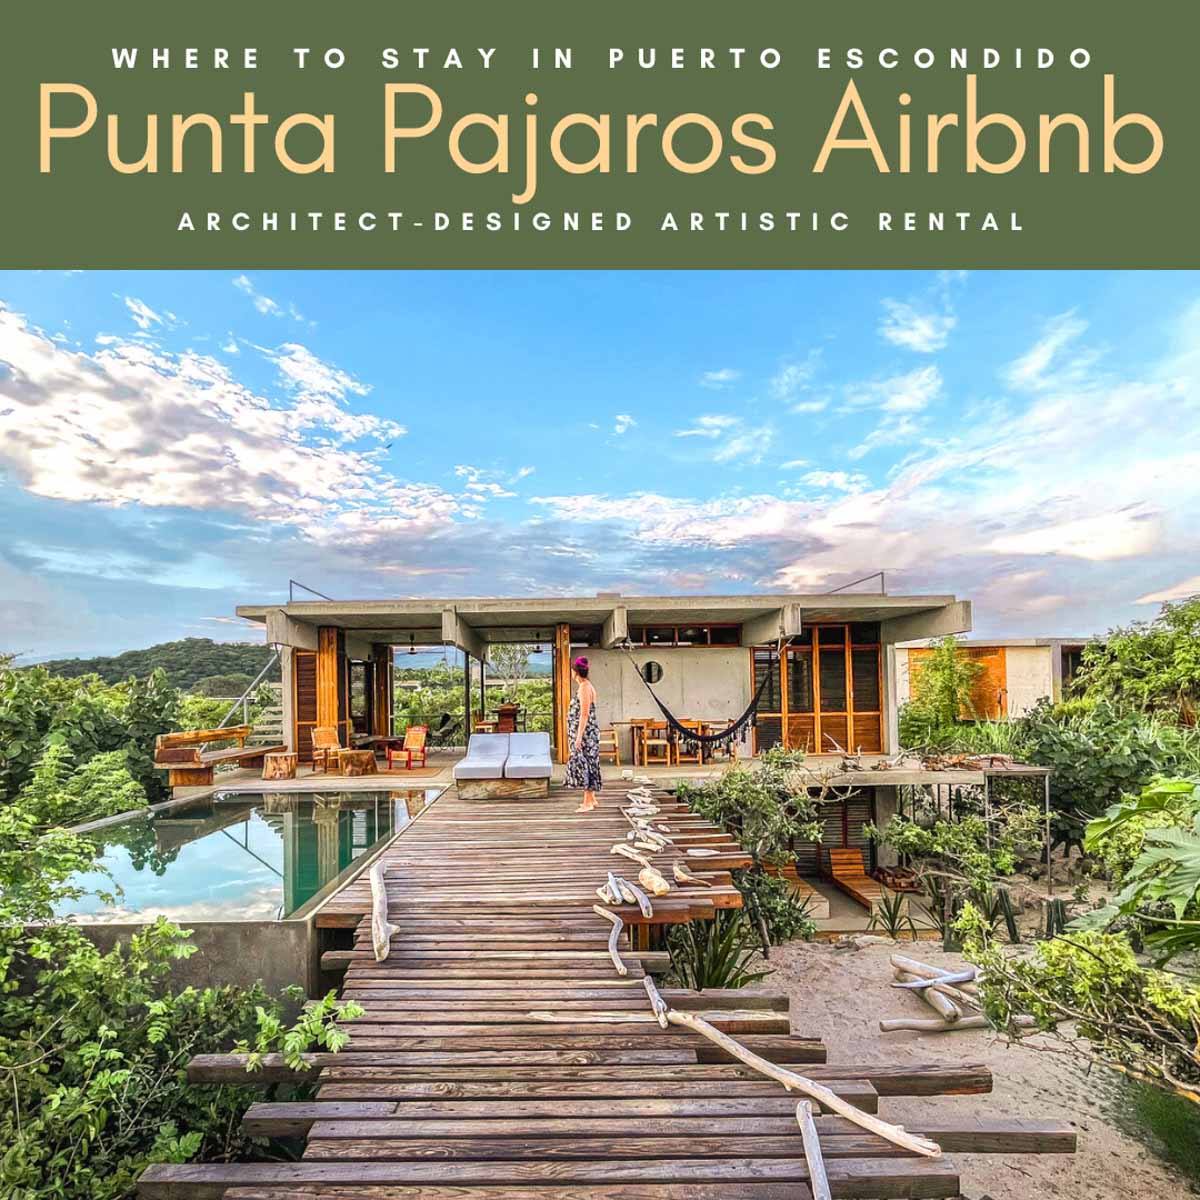 punta pajaros airbnb where to stay in puerto escondido casas mar